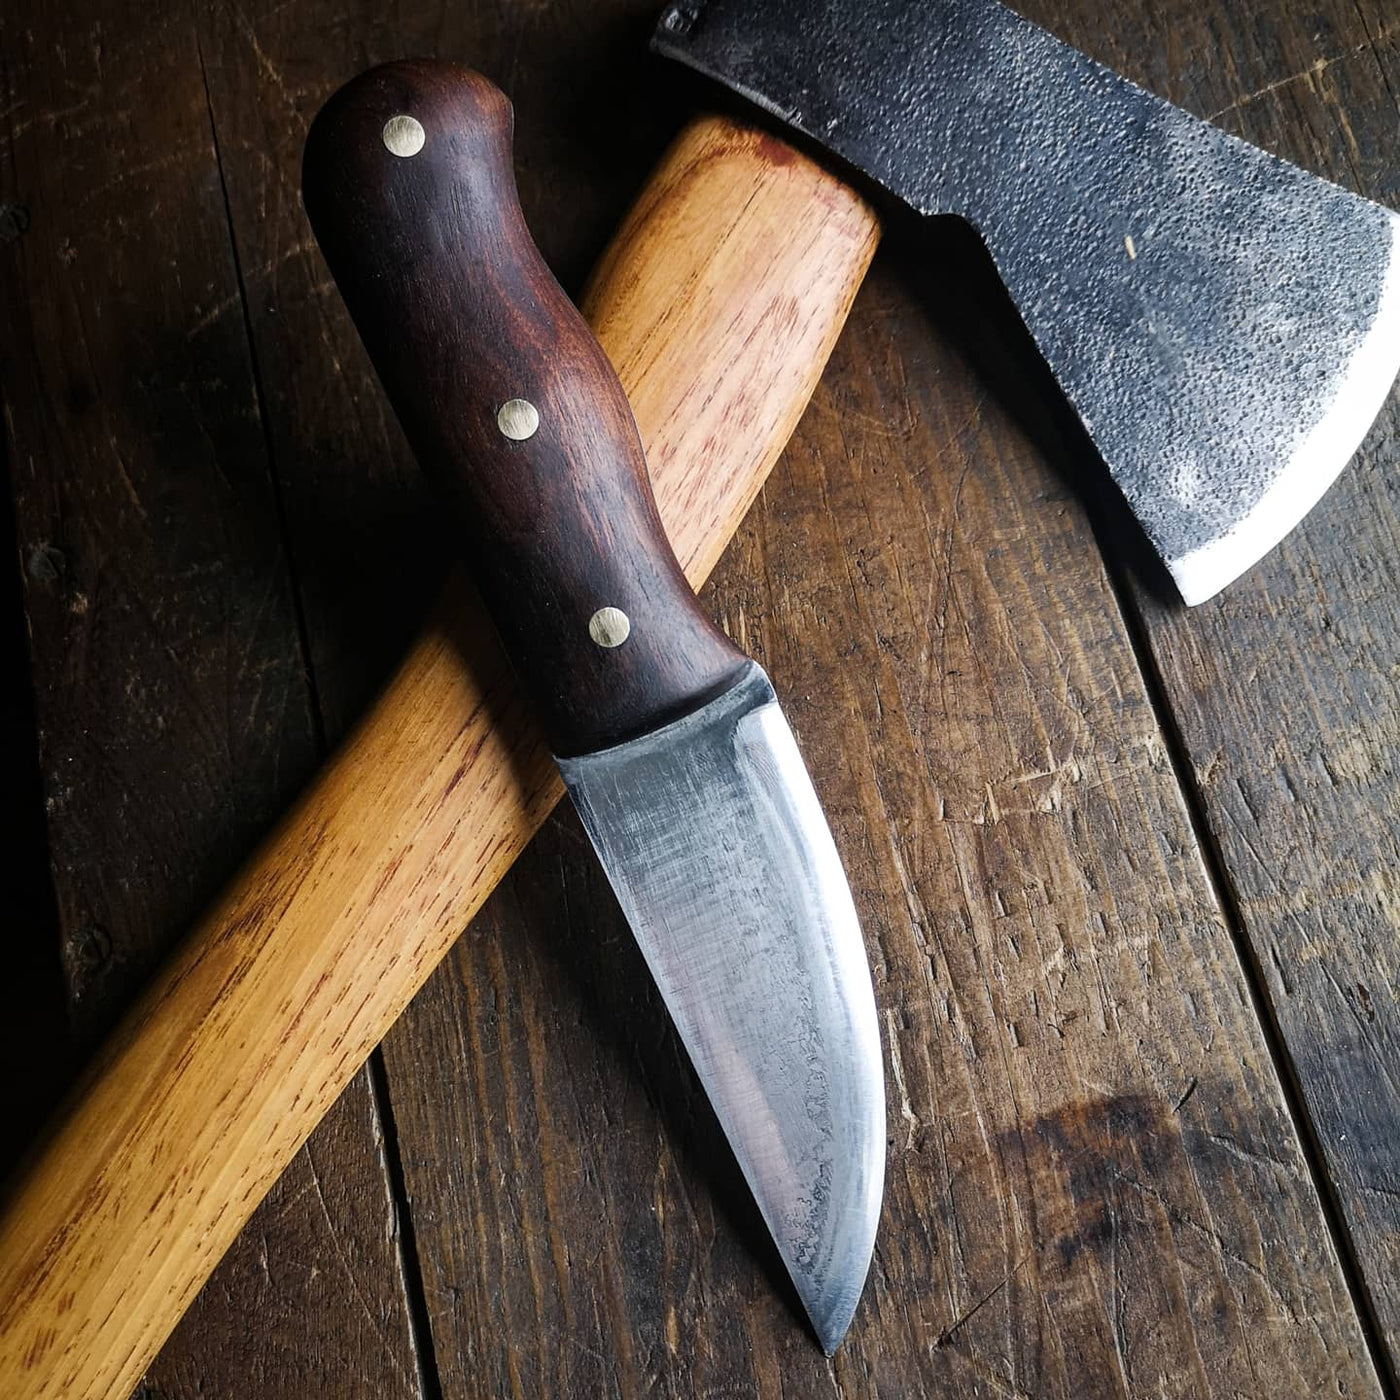 The Boreal Knife - Hammerthreads